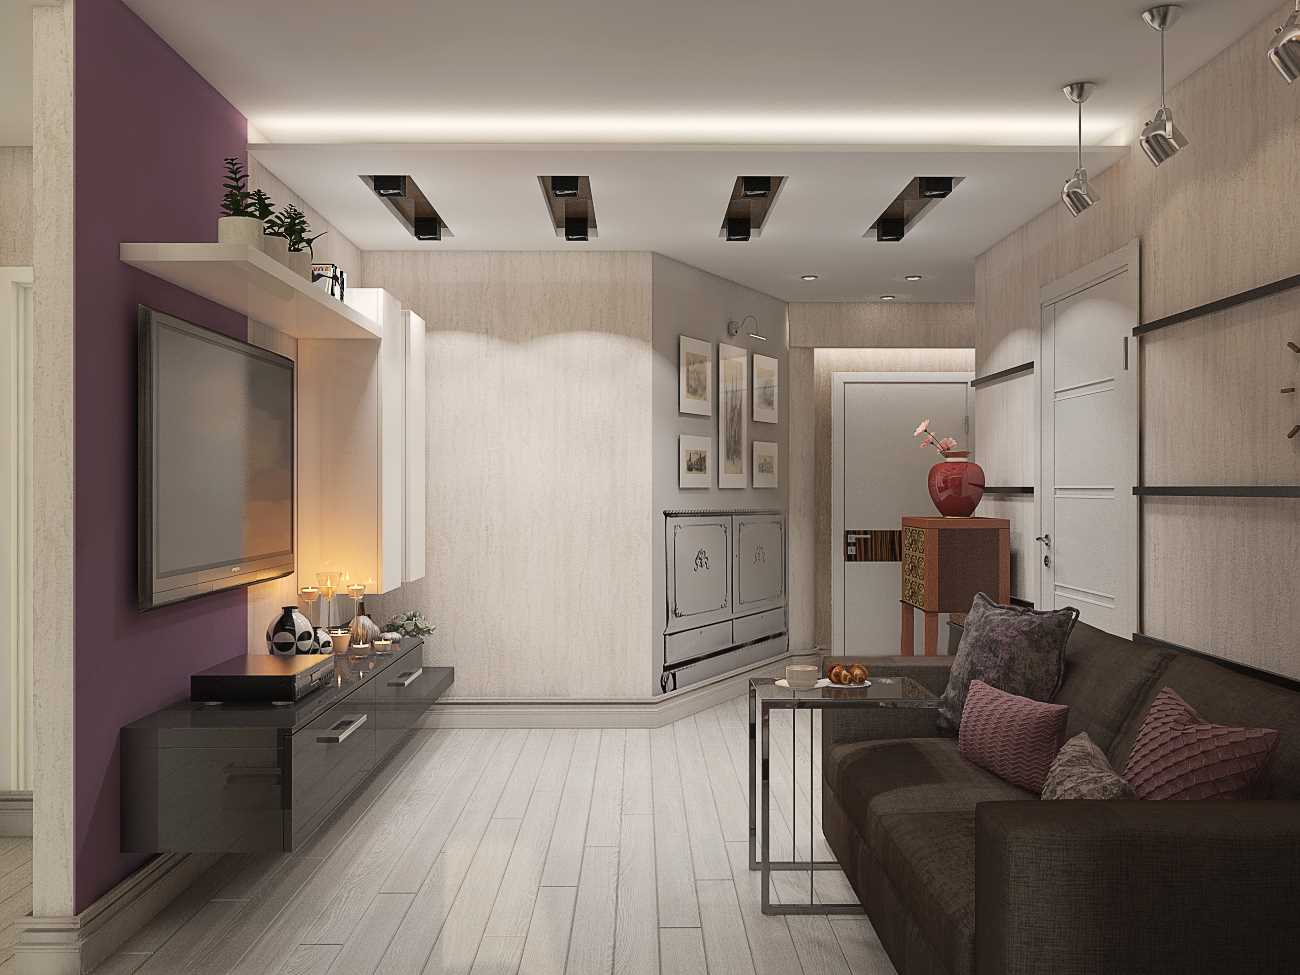 Un esempio di un bellissimo design di un moderno appartamento di 70 mq